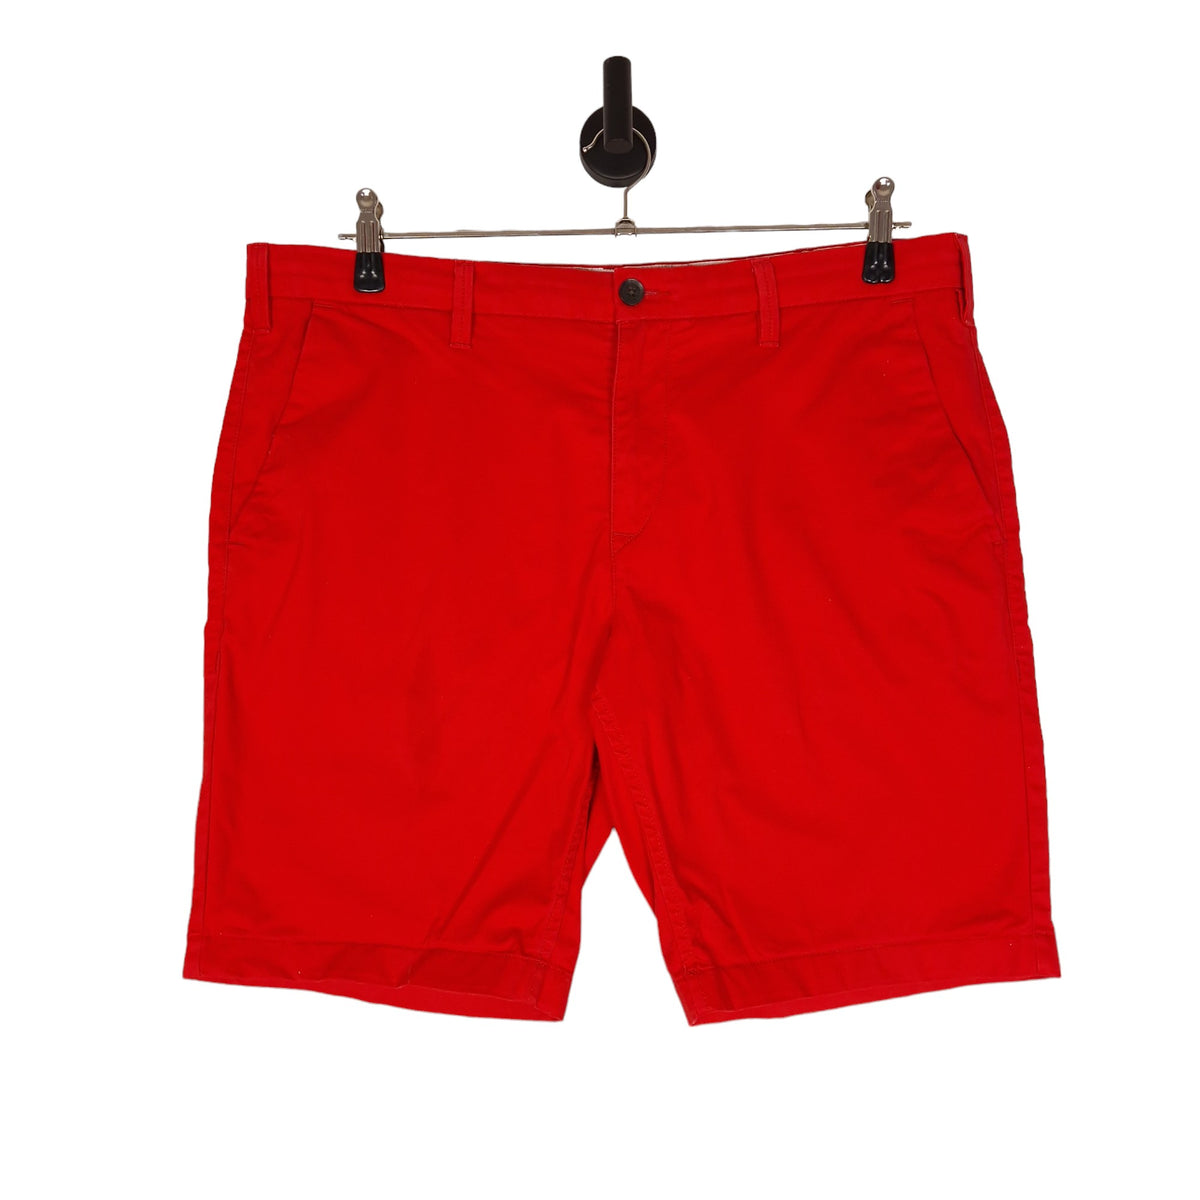 Timberland Chino Shorts - Size W38